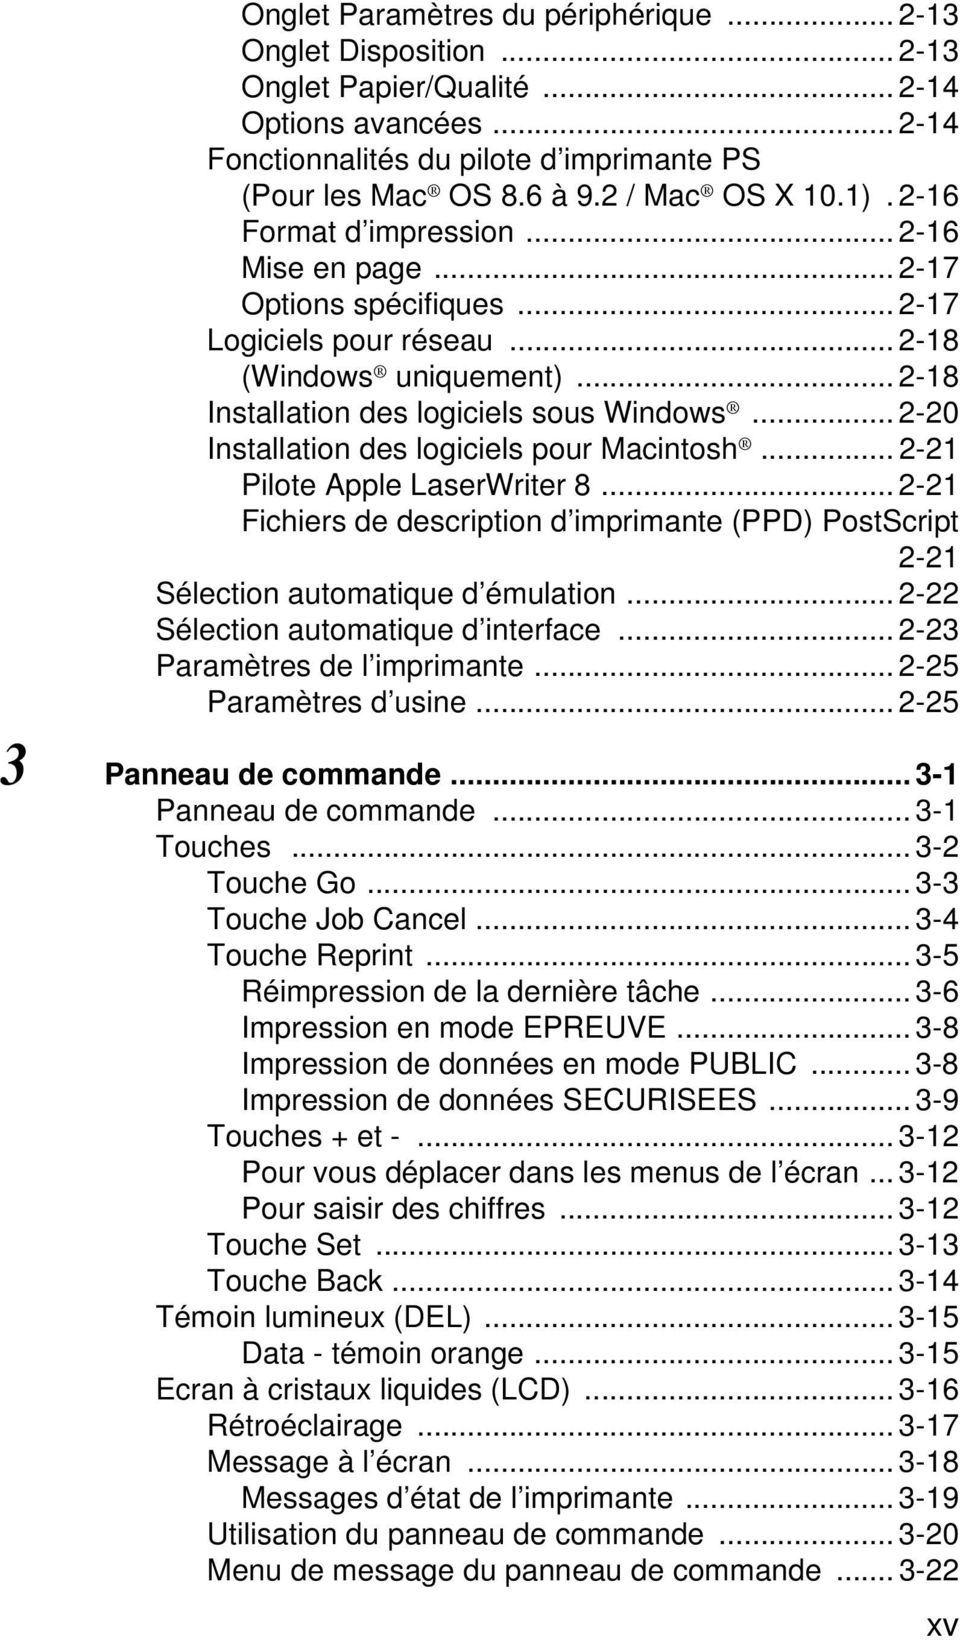 .. 2-20 Installation des logiciels pour Macintosh... 2-21 Pilote Apple LaserWriter 8... 2-21 Fichiers de description d imprimante (PPD) PostScript 2-21 Sélection automatique d émulation.